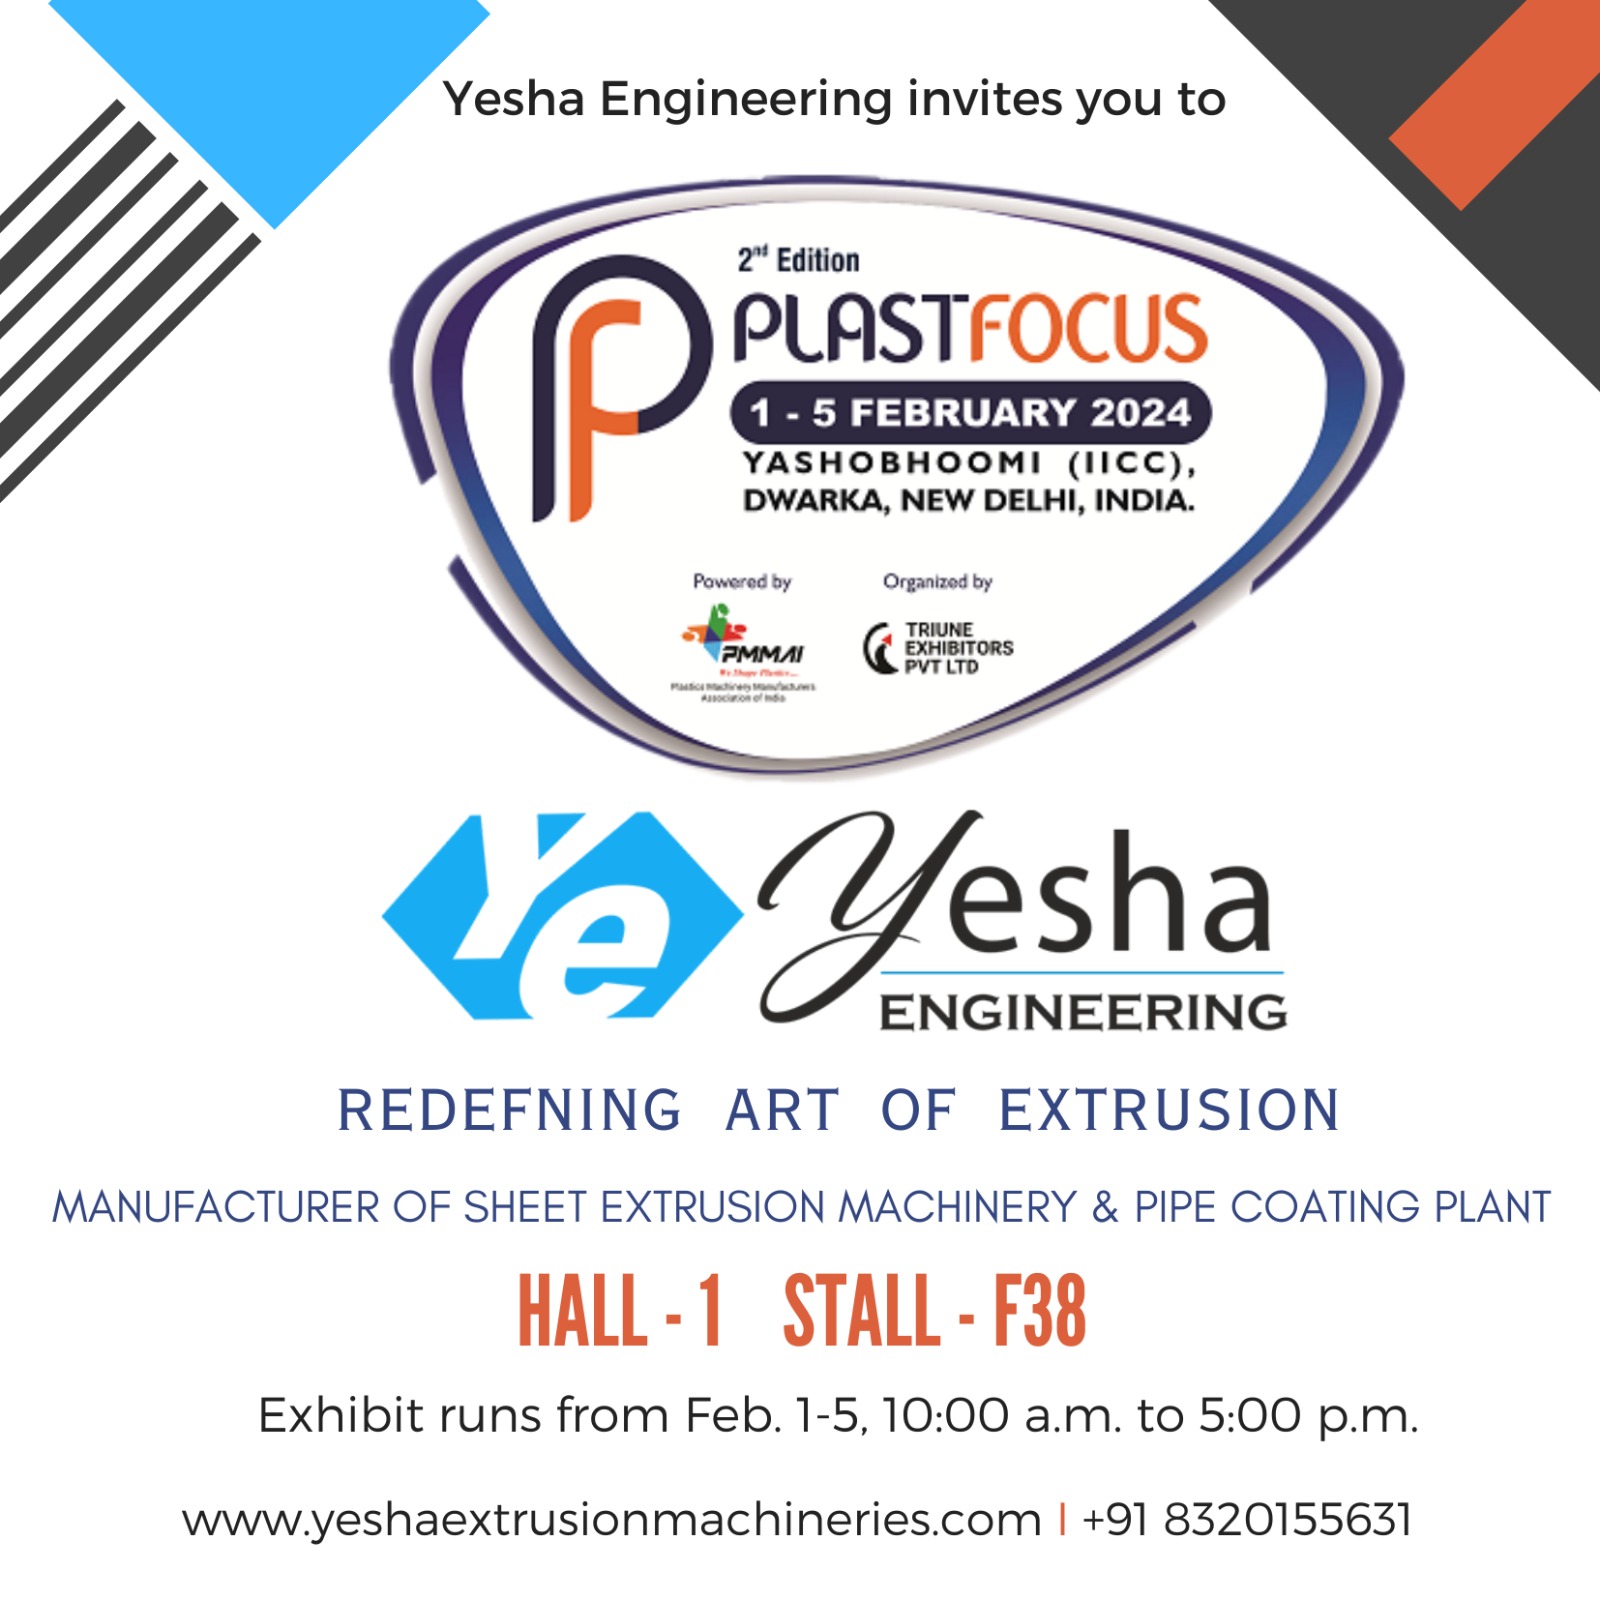 yesha-engineering-plastfocus-expo